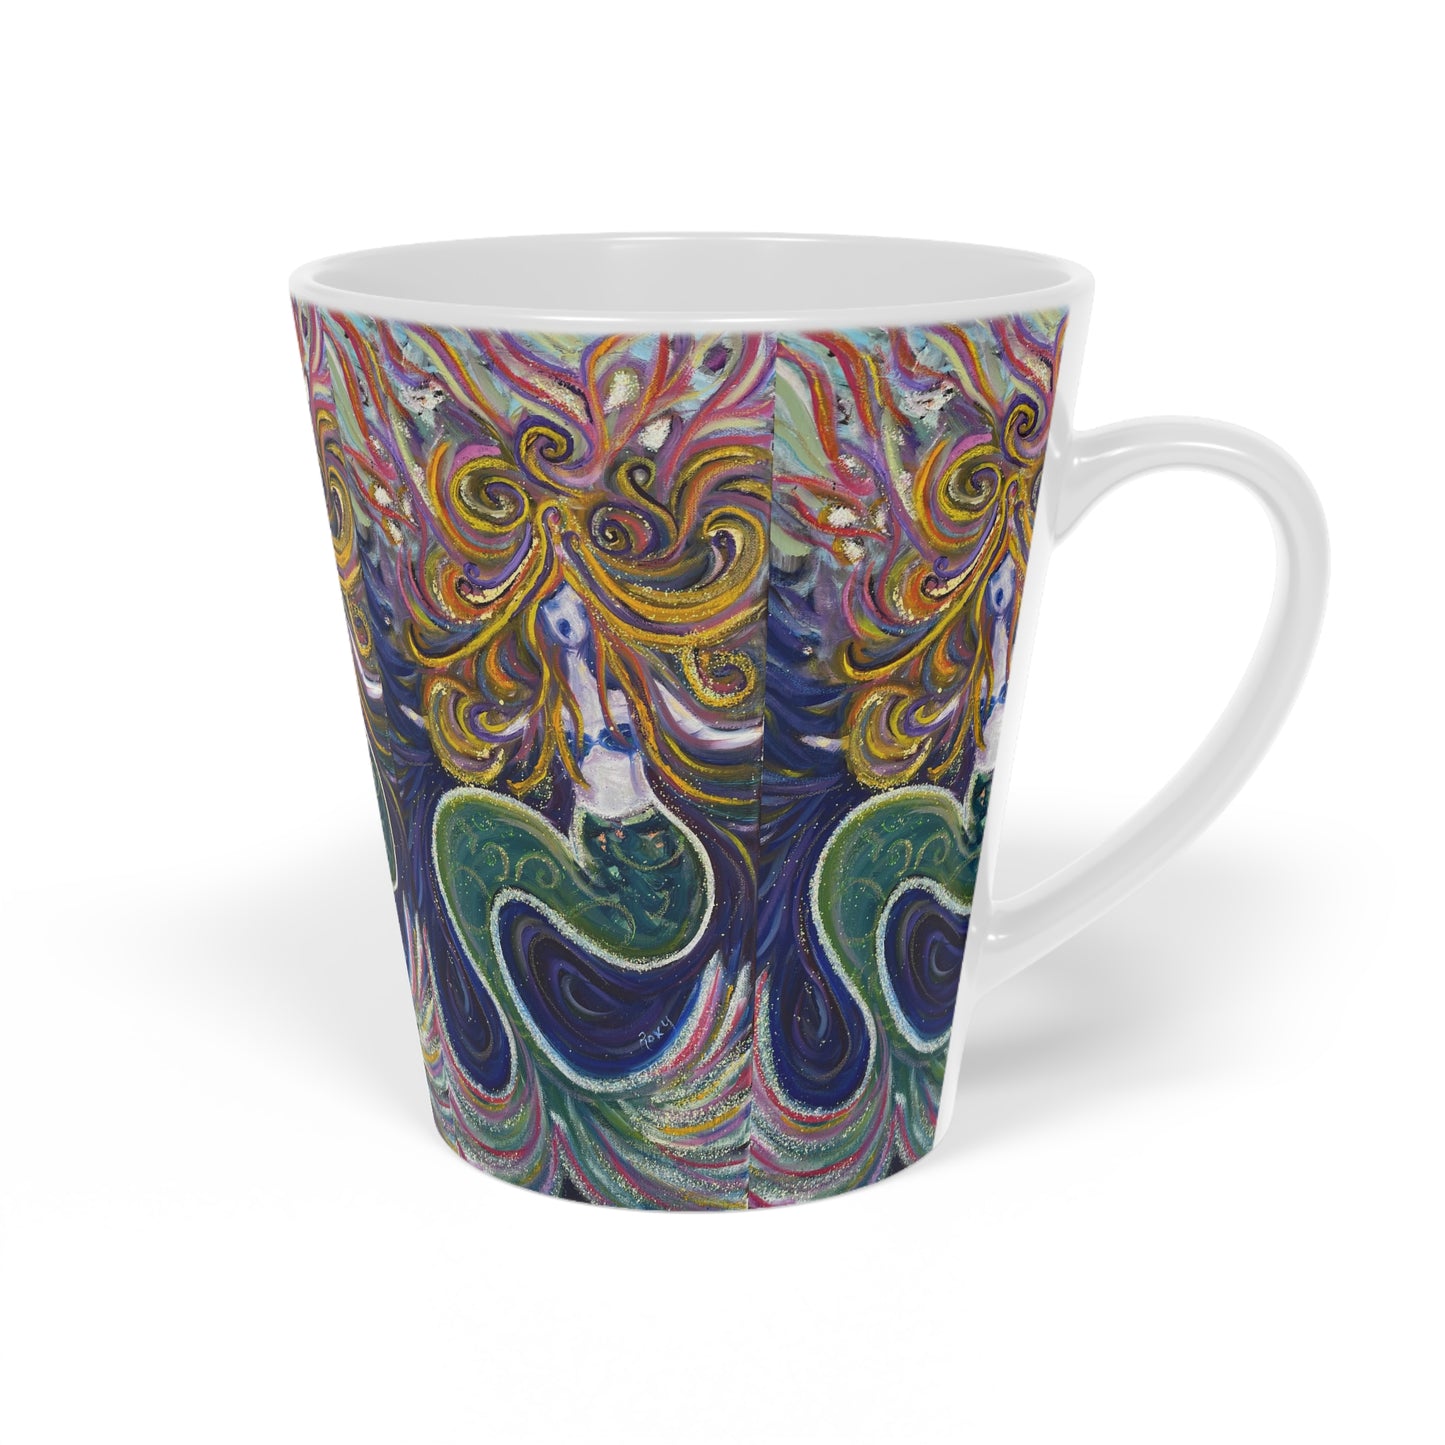 The Mermaid Latte Mug, 12oz